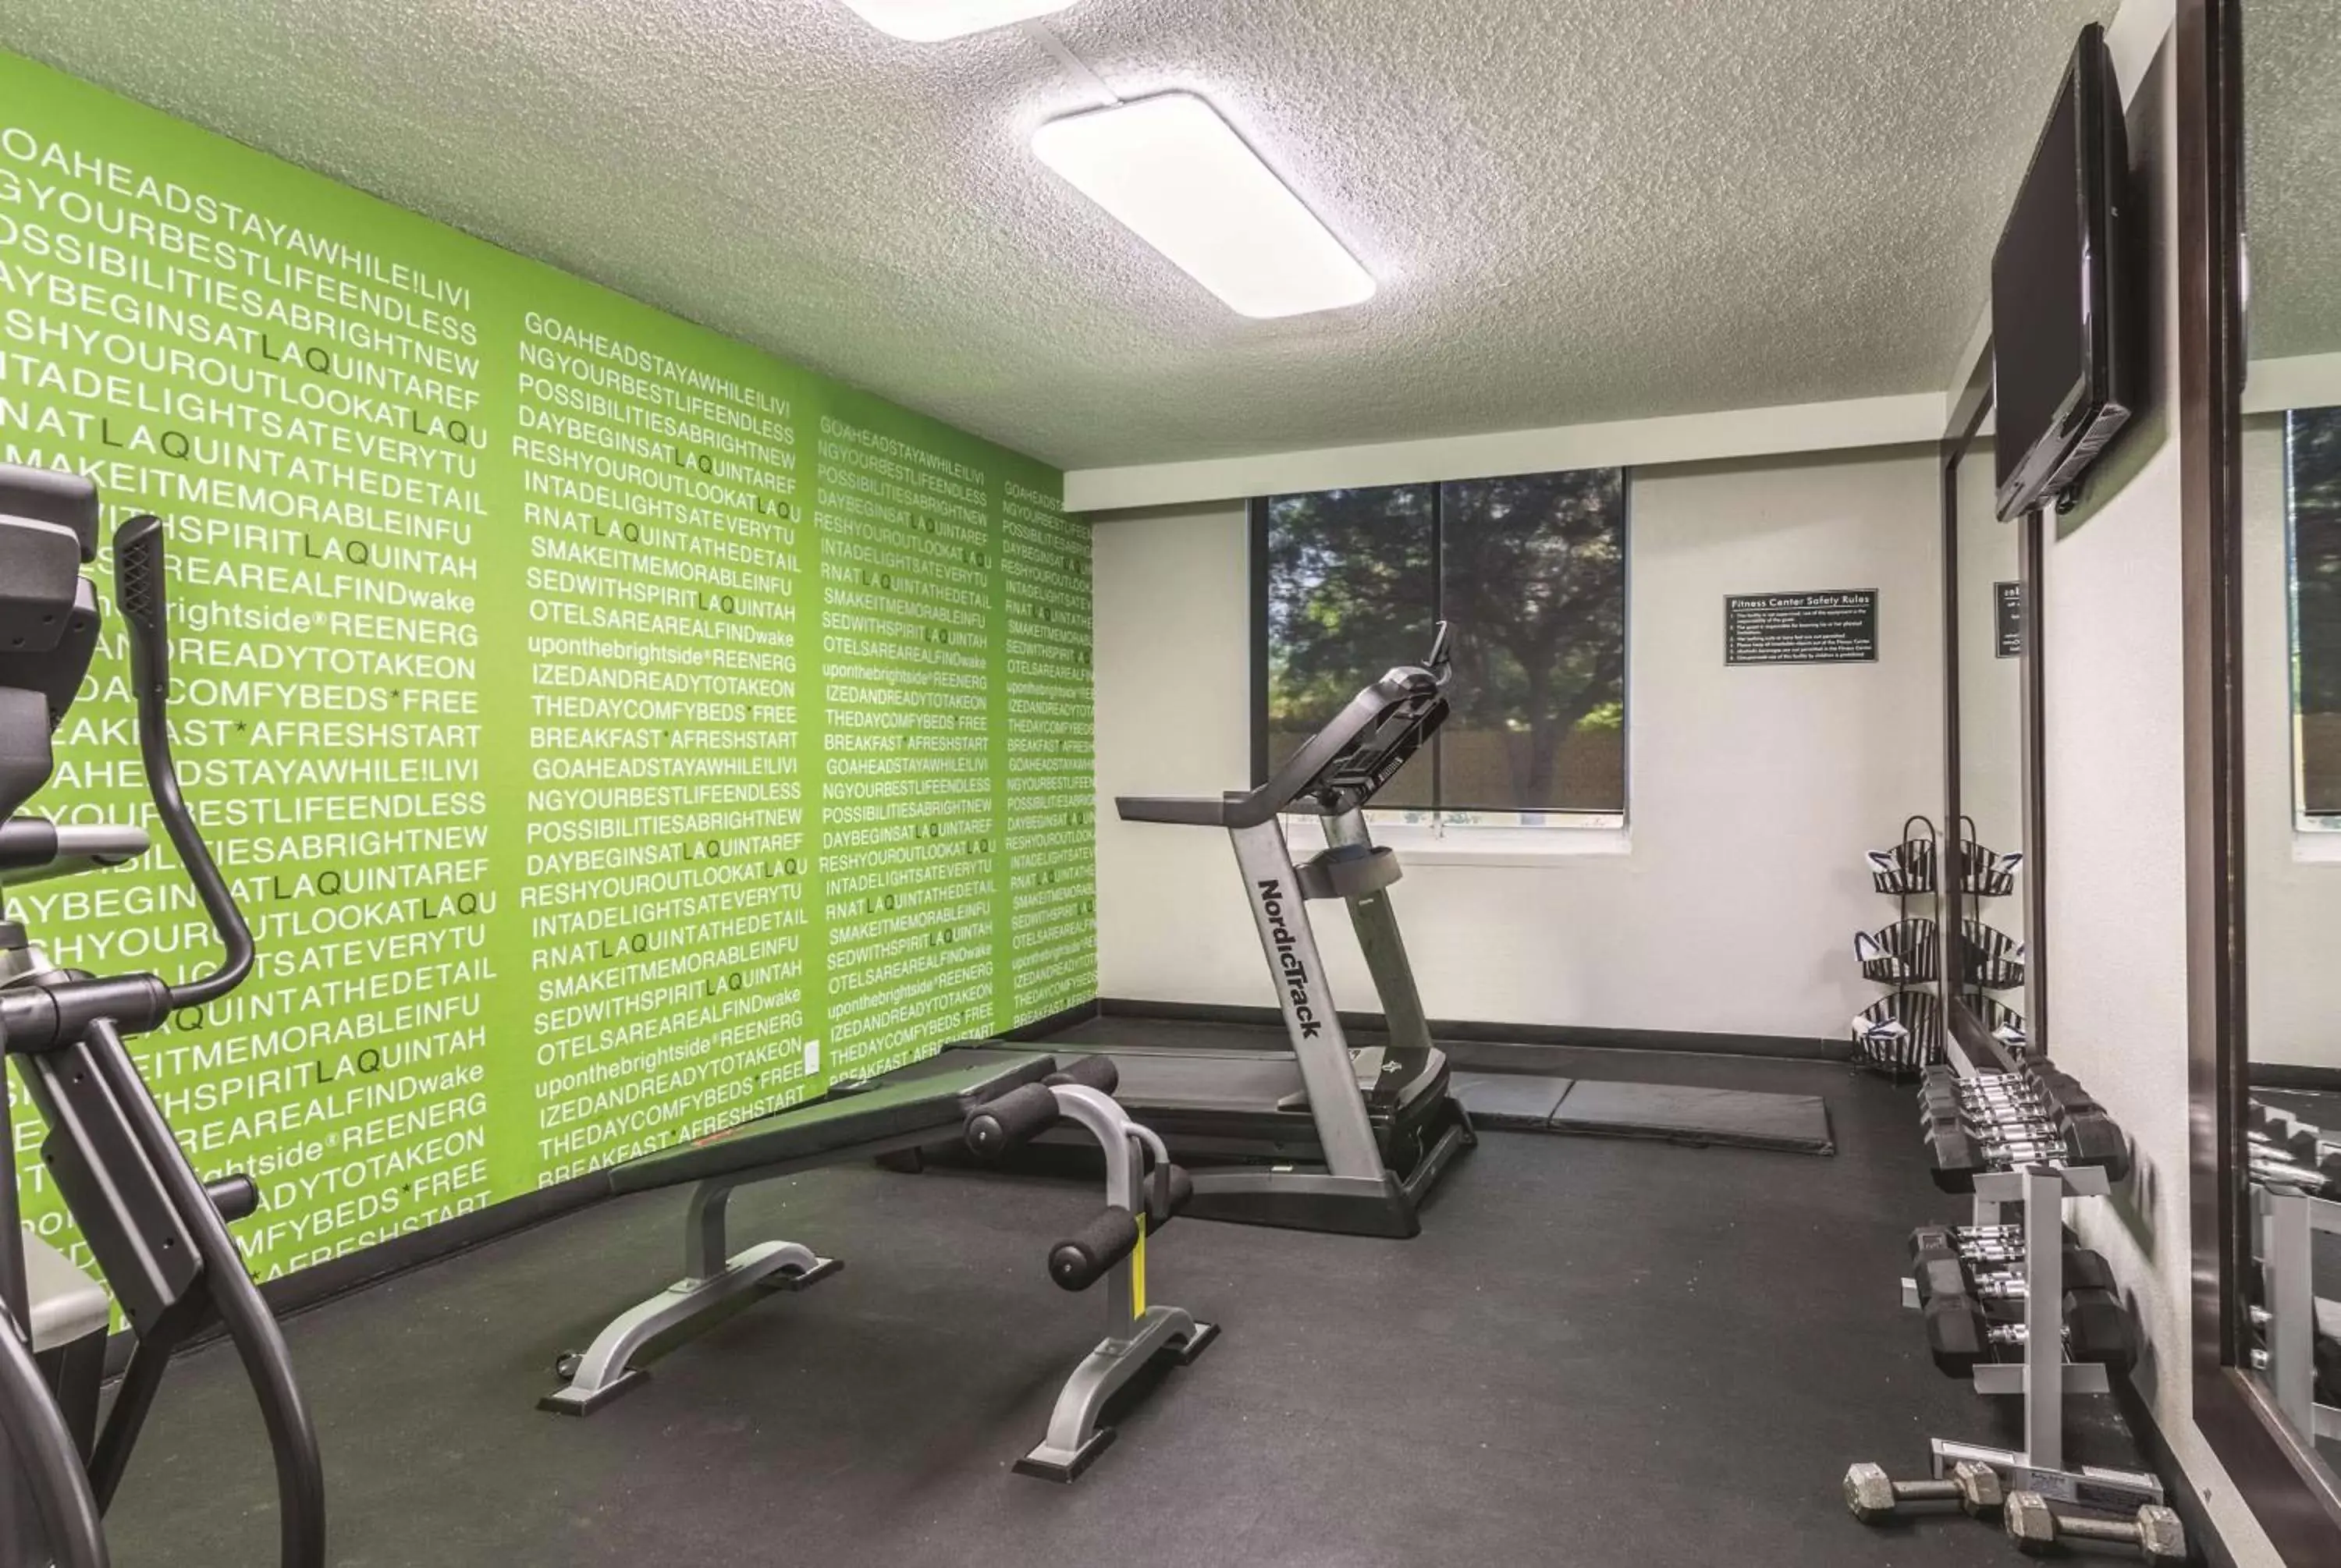 Fitness centre/facilities, Fitness Center/Facilities in La Quinta Inn by Wyndham Jupiter